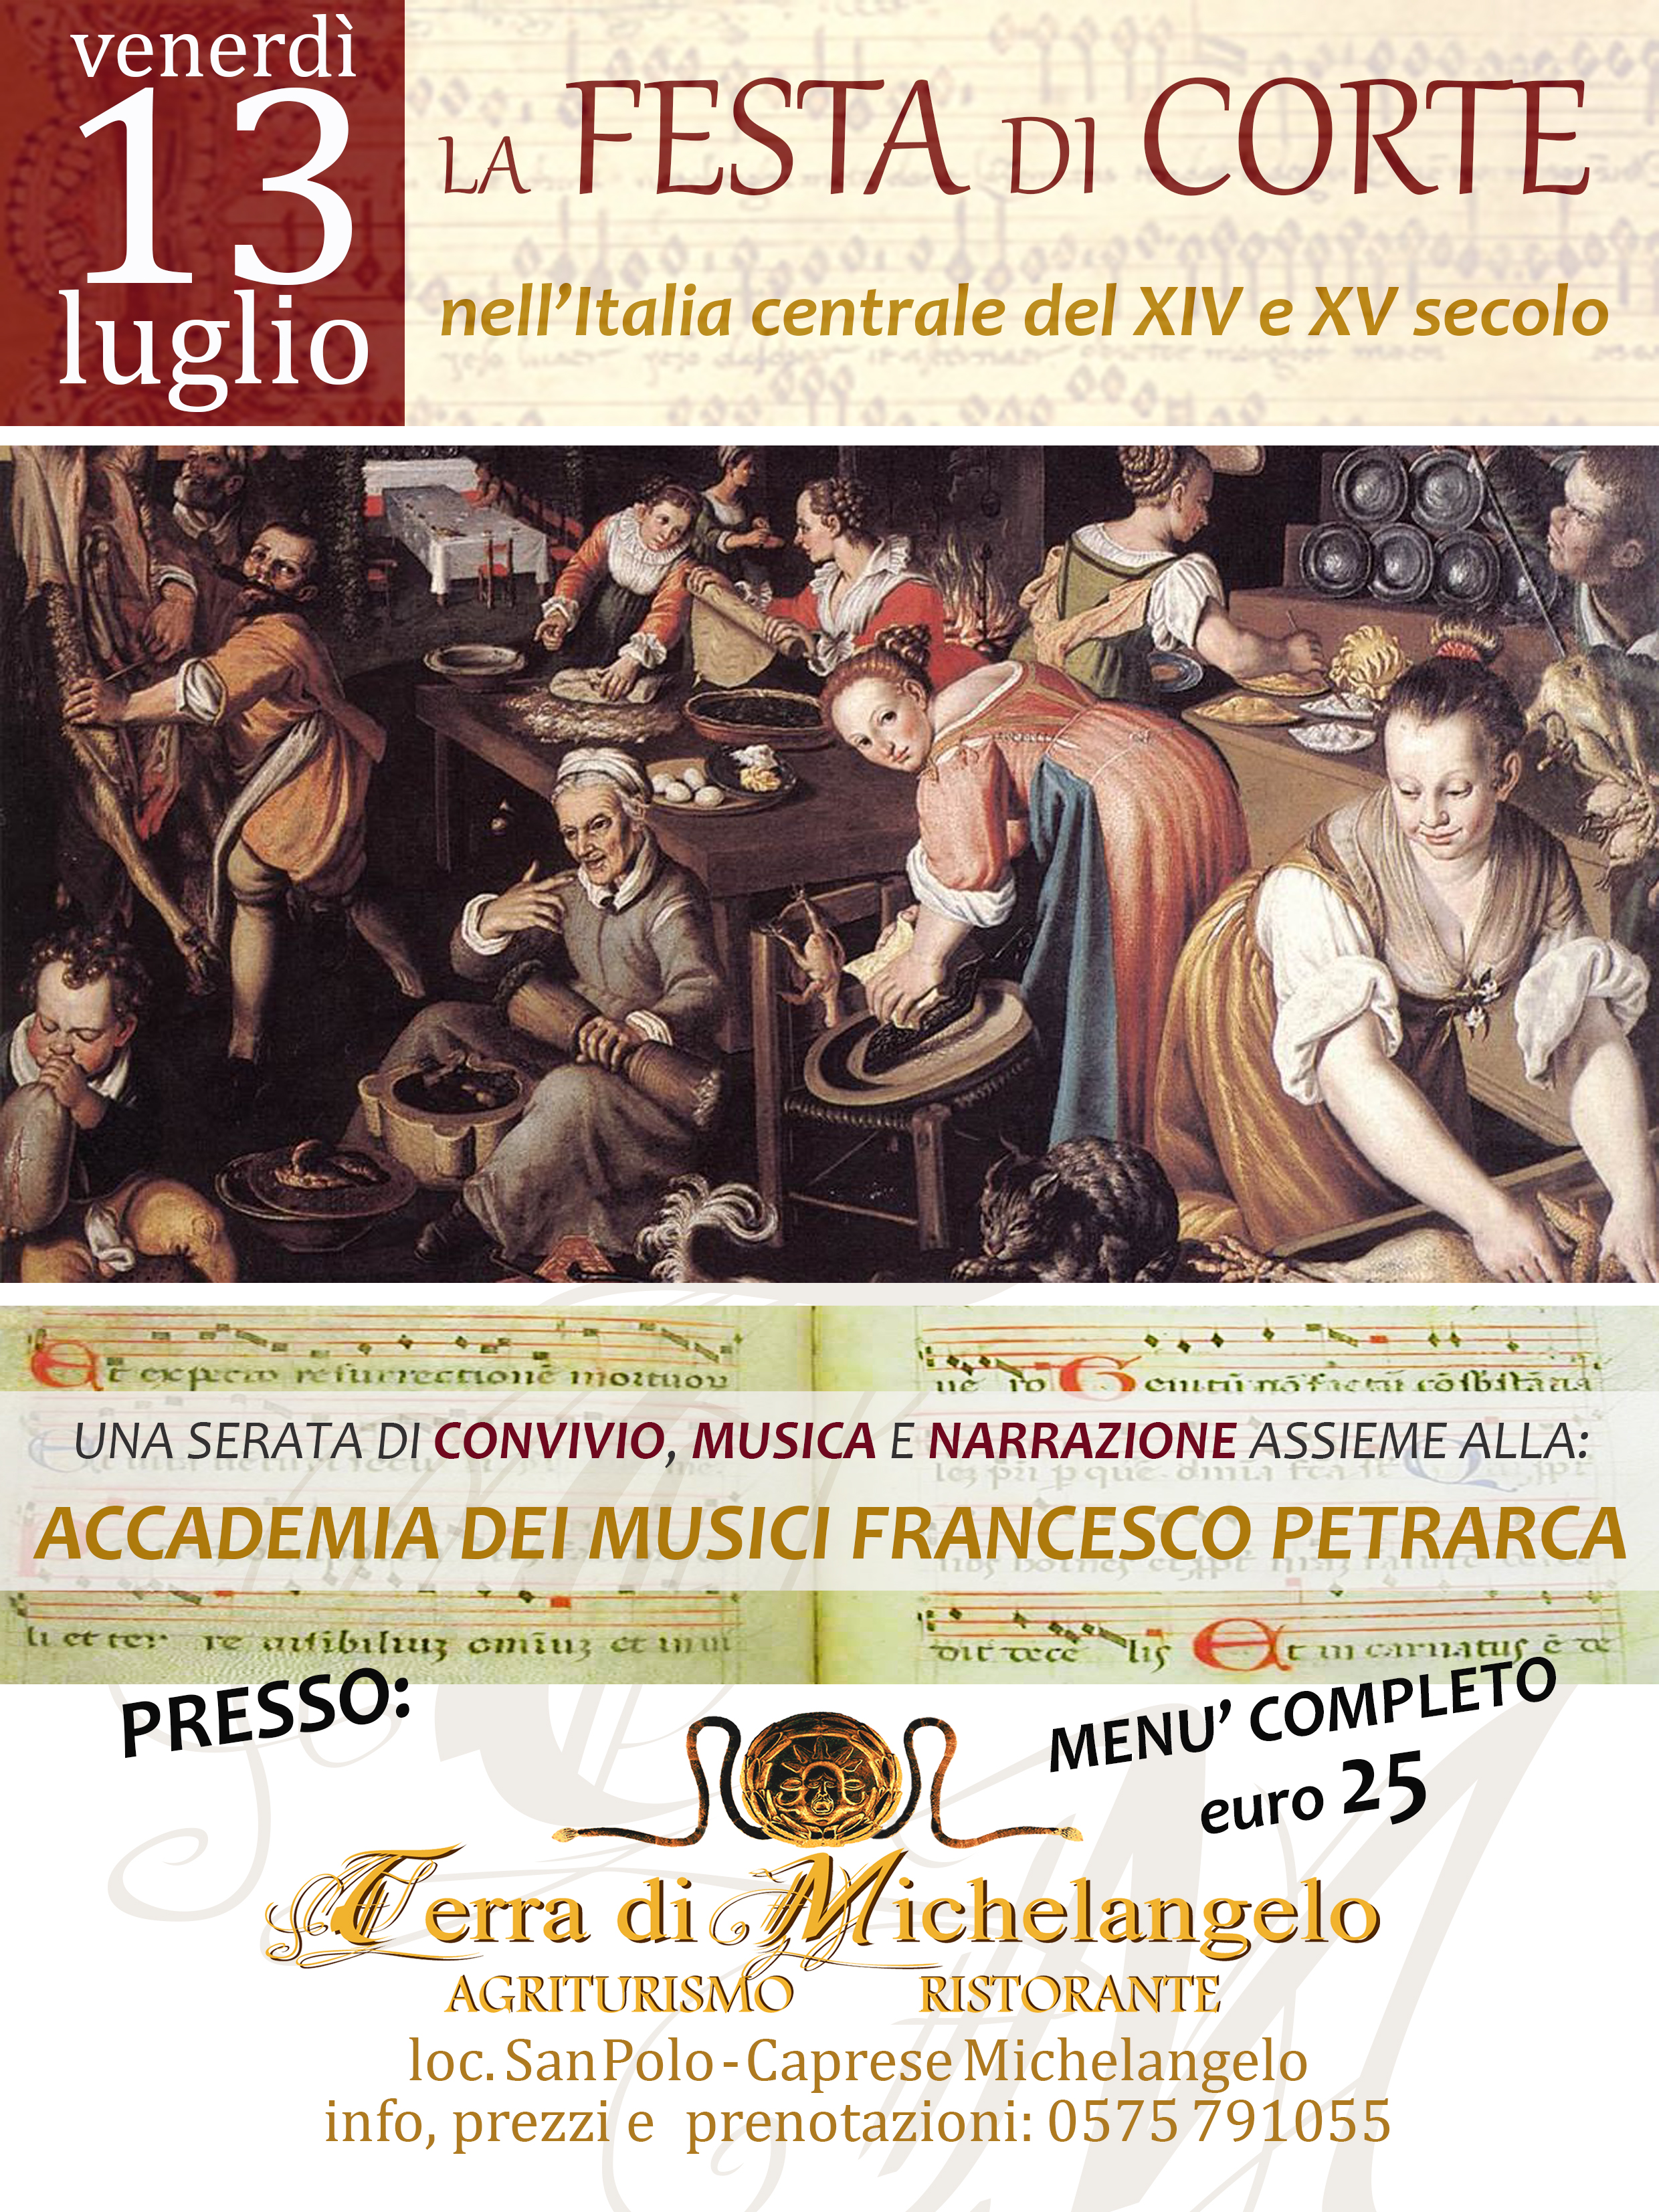 13 luglio: La FESTA di CORTE nell'Italia centrale del XIV e XV secolo